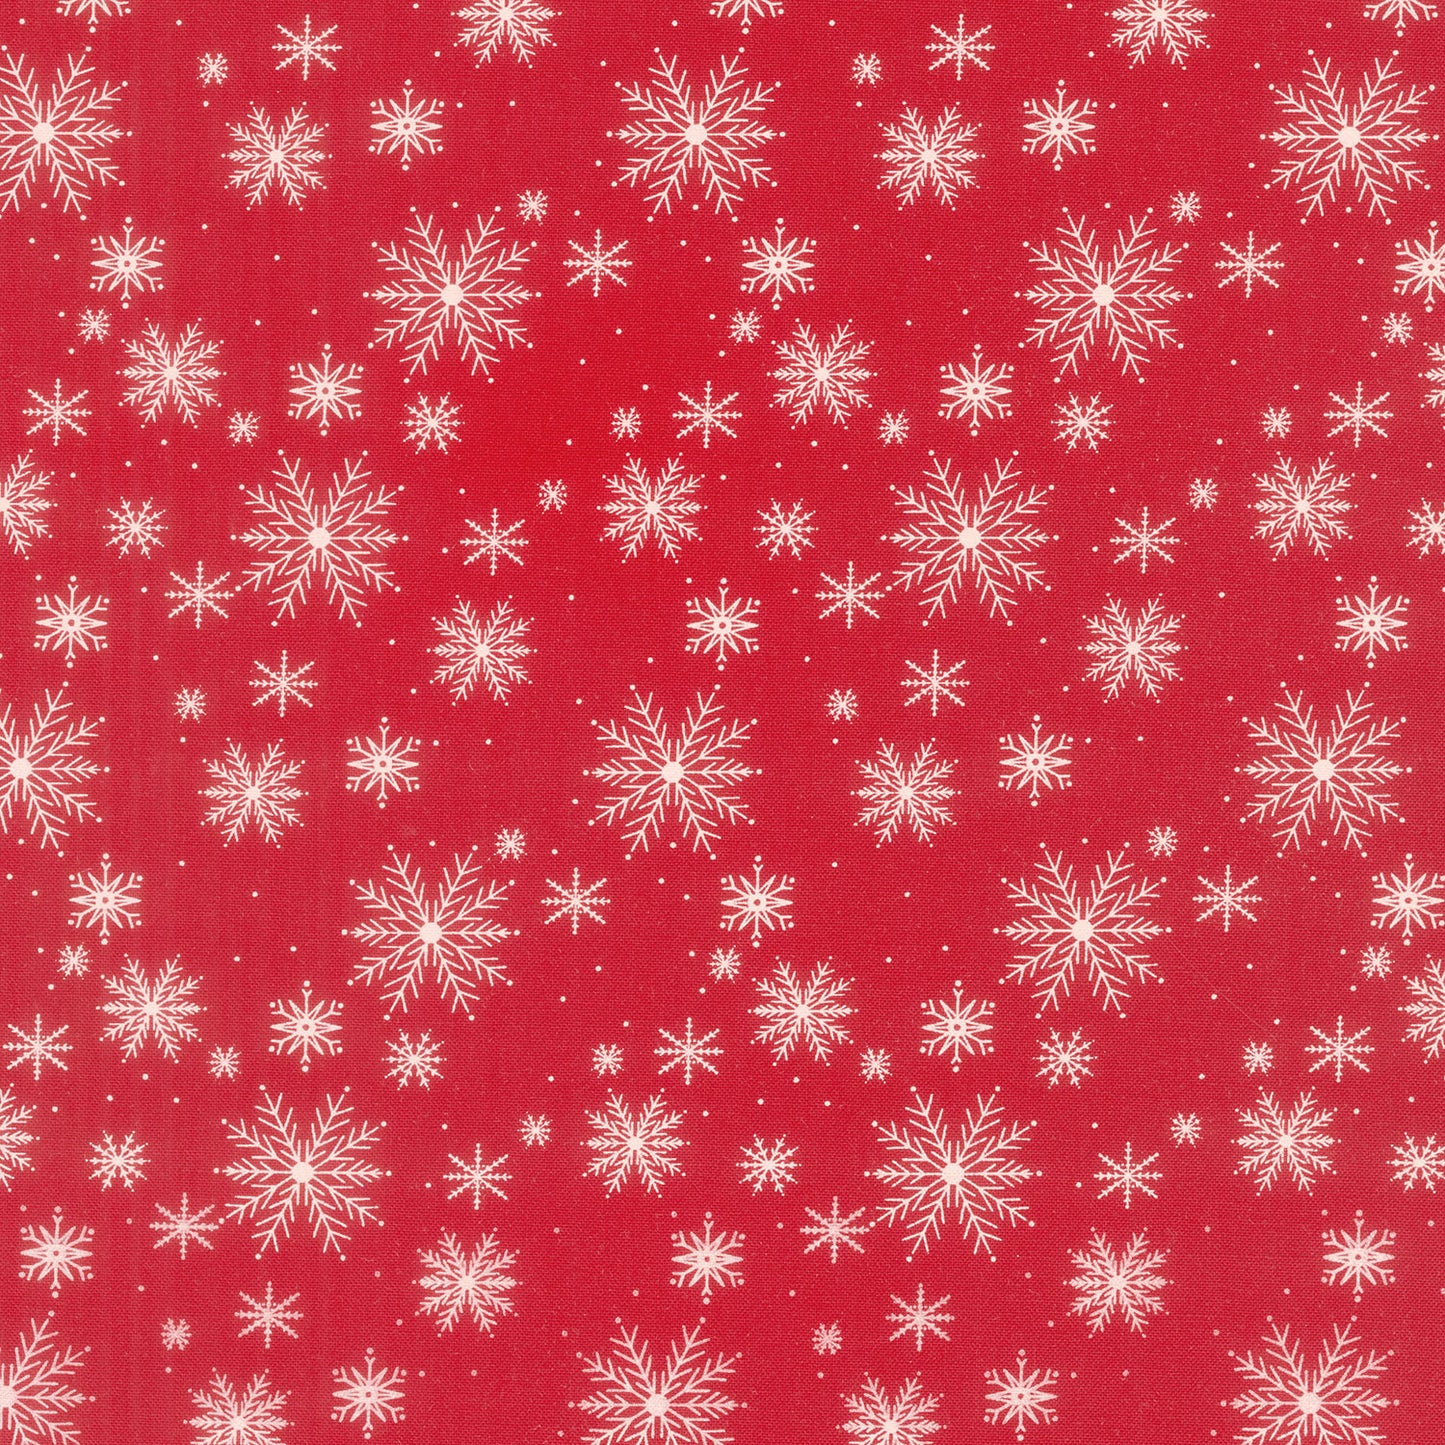 Once Upon a Christmas - Snowfall Christmas Red Yardage Primary Image